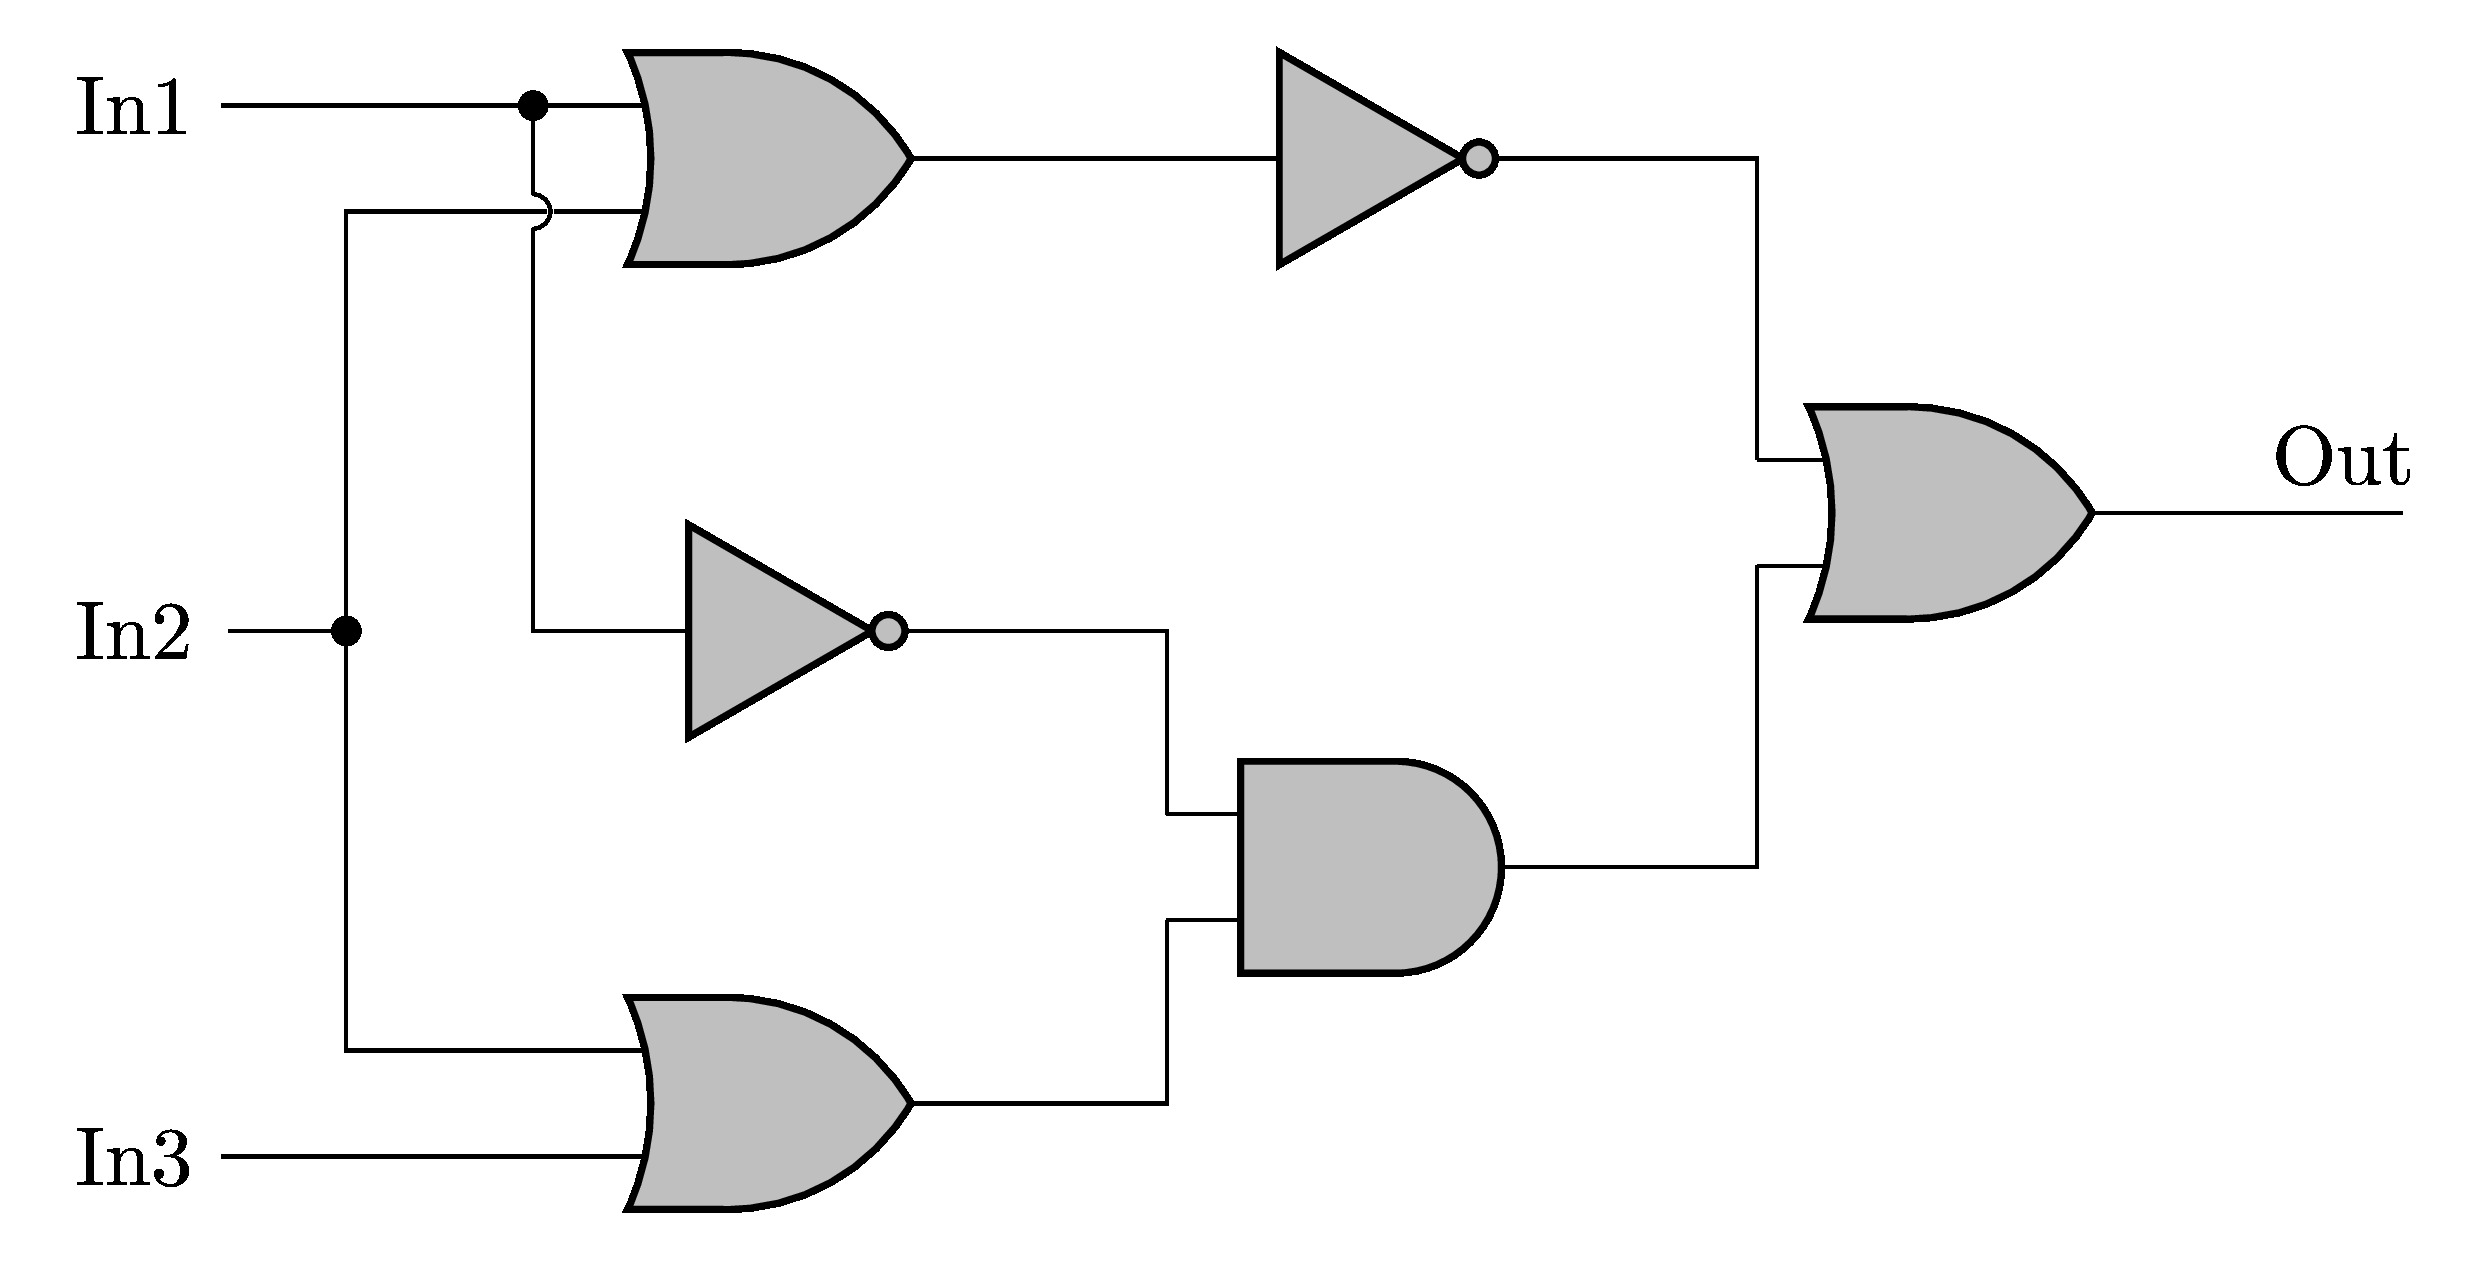 Logic Circuit in CircuiTikZ IEEE style